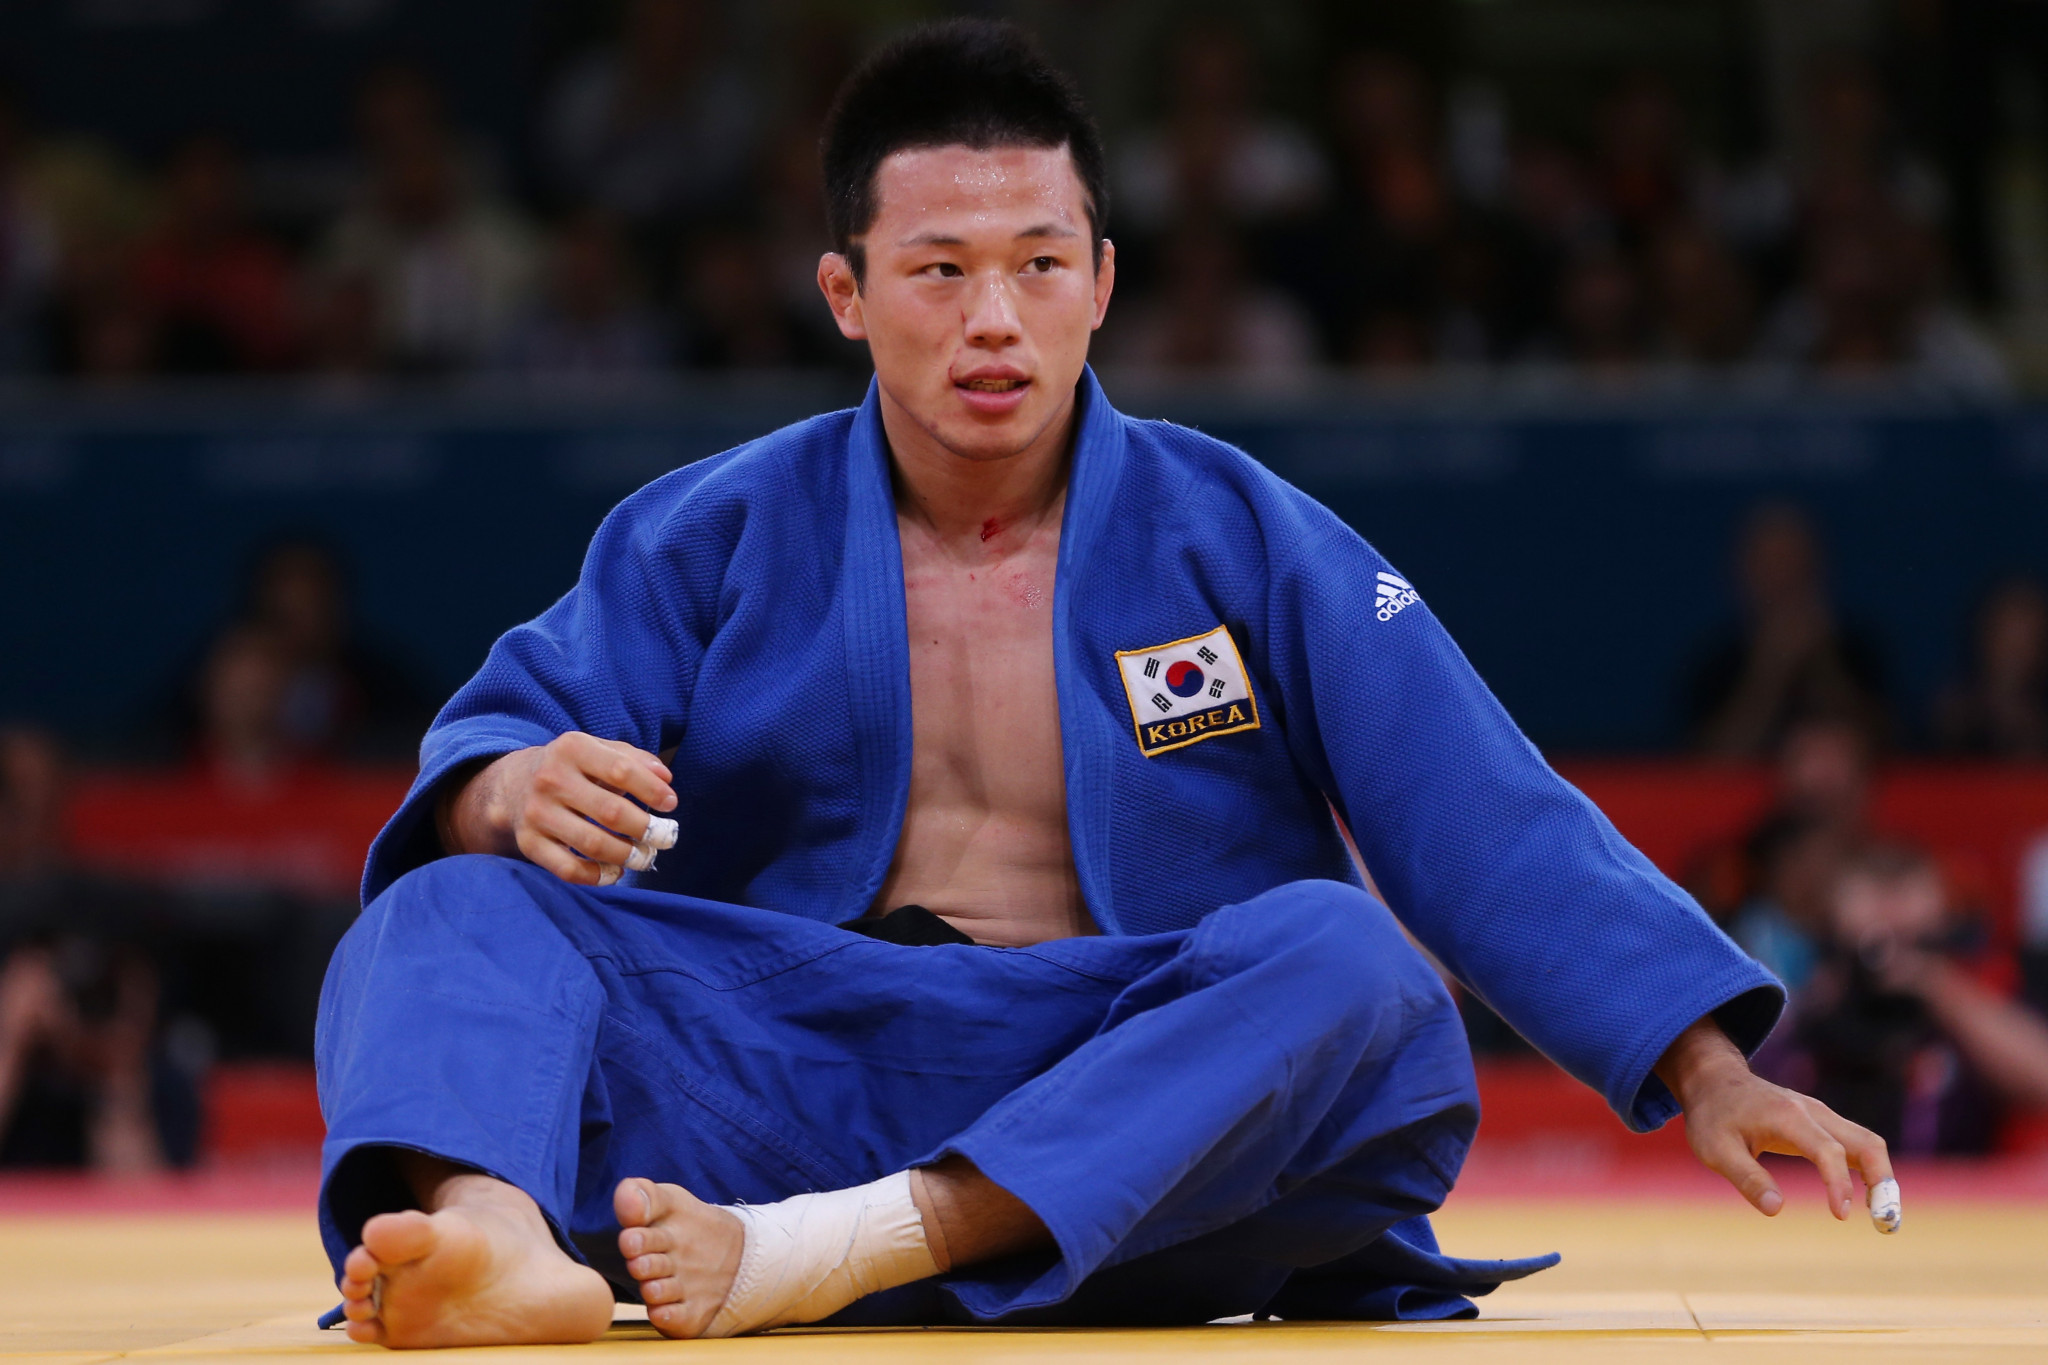 Beijing 2008 silver medallist Wang arrested over alleged sexual assault